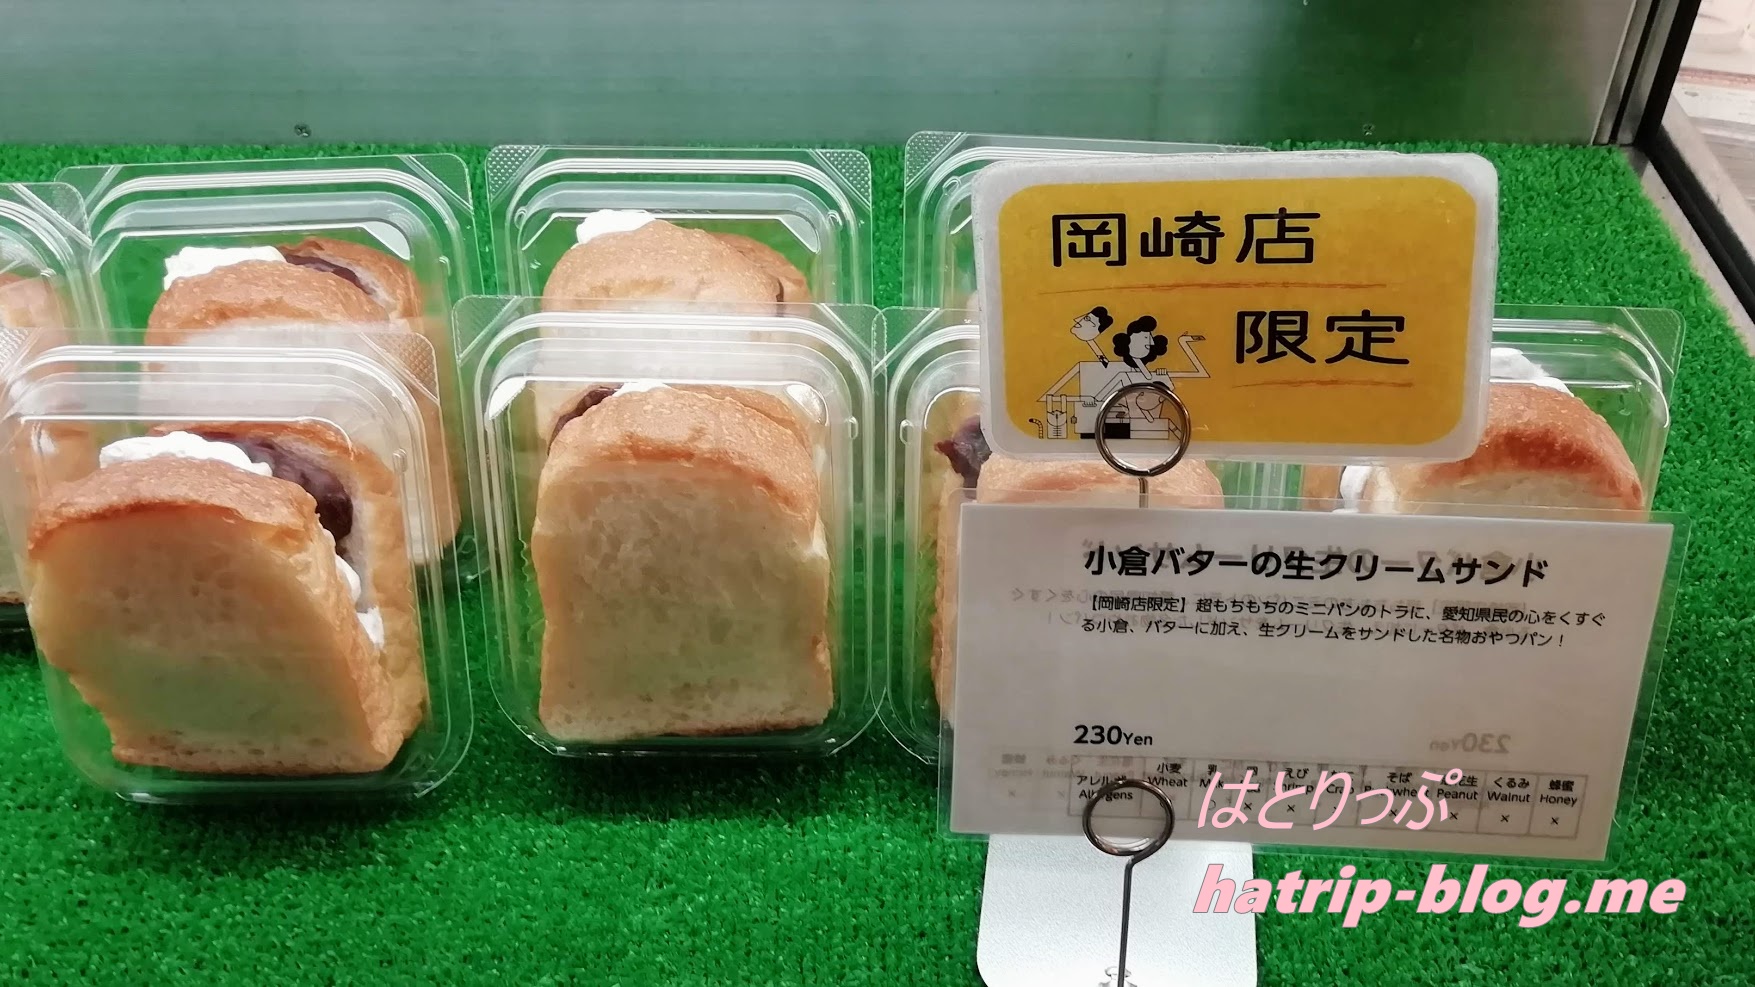 新東名高速道路 岡崎サービスエリア スペイン窯 パンのトラ 小倉バターの生クリームサンド